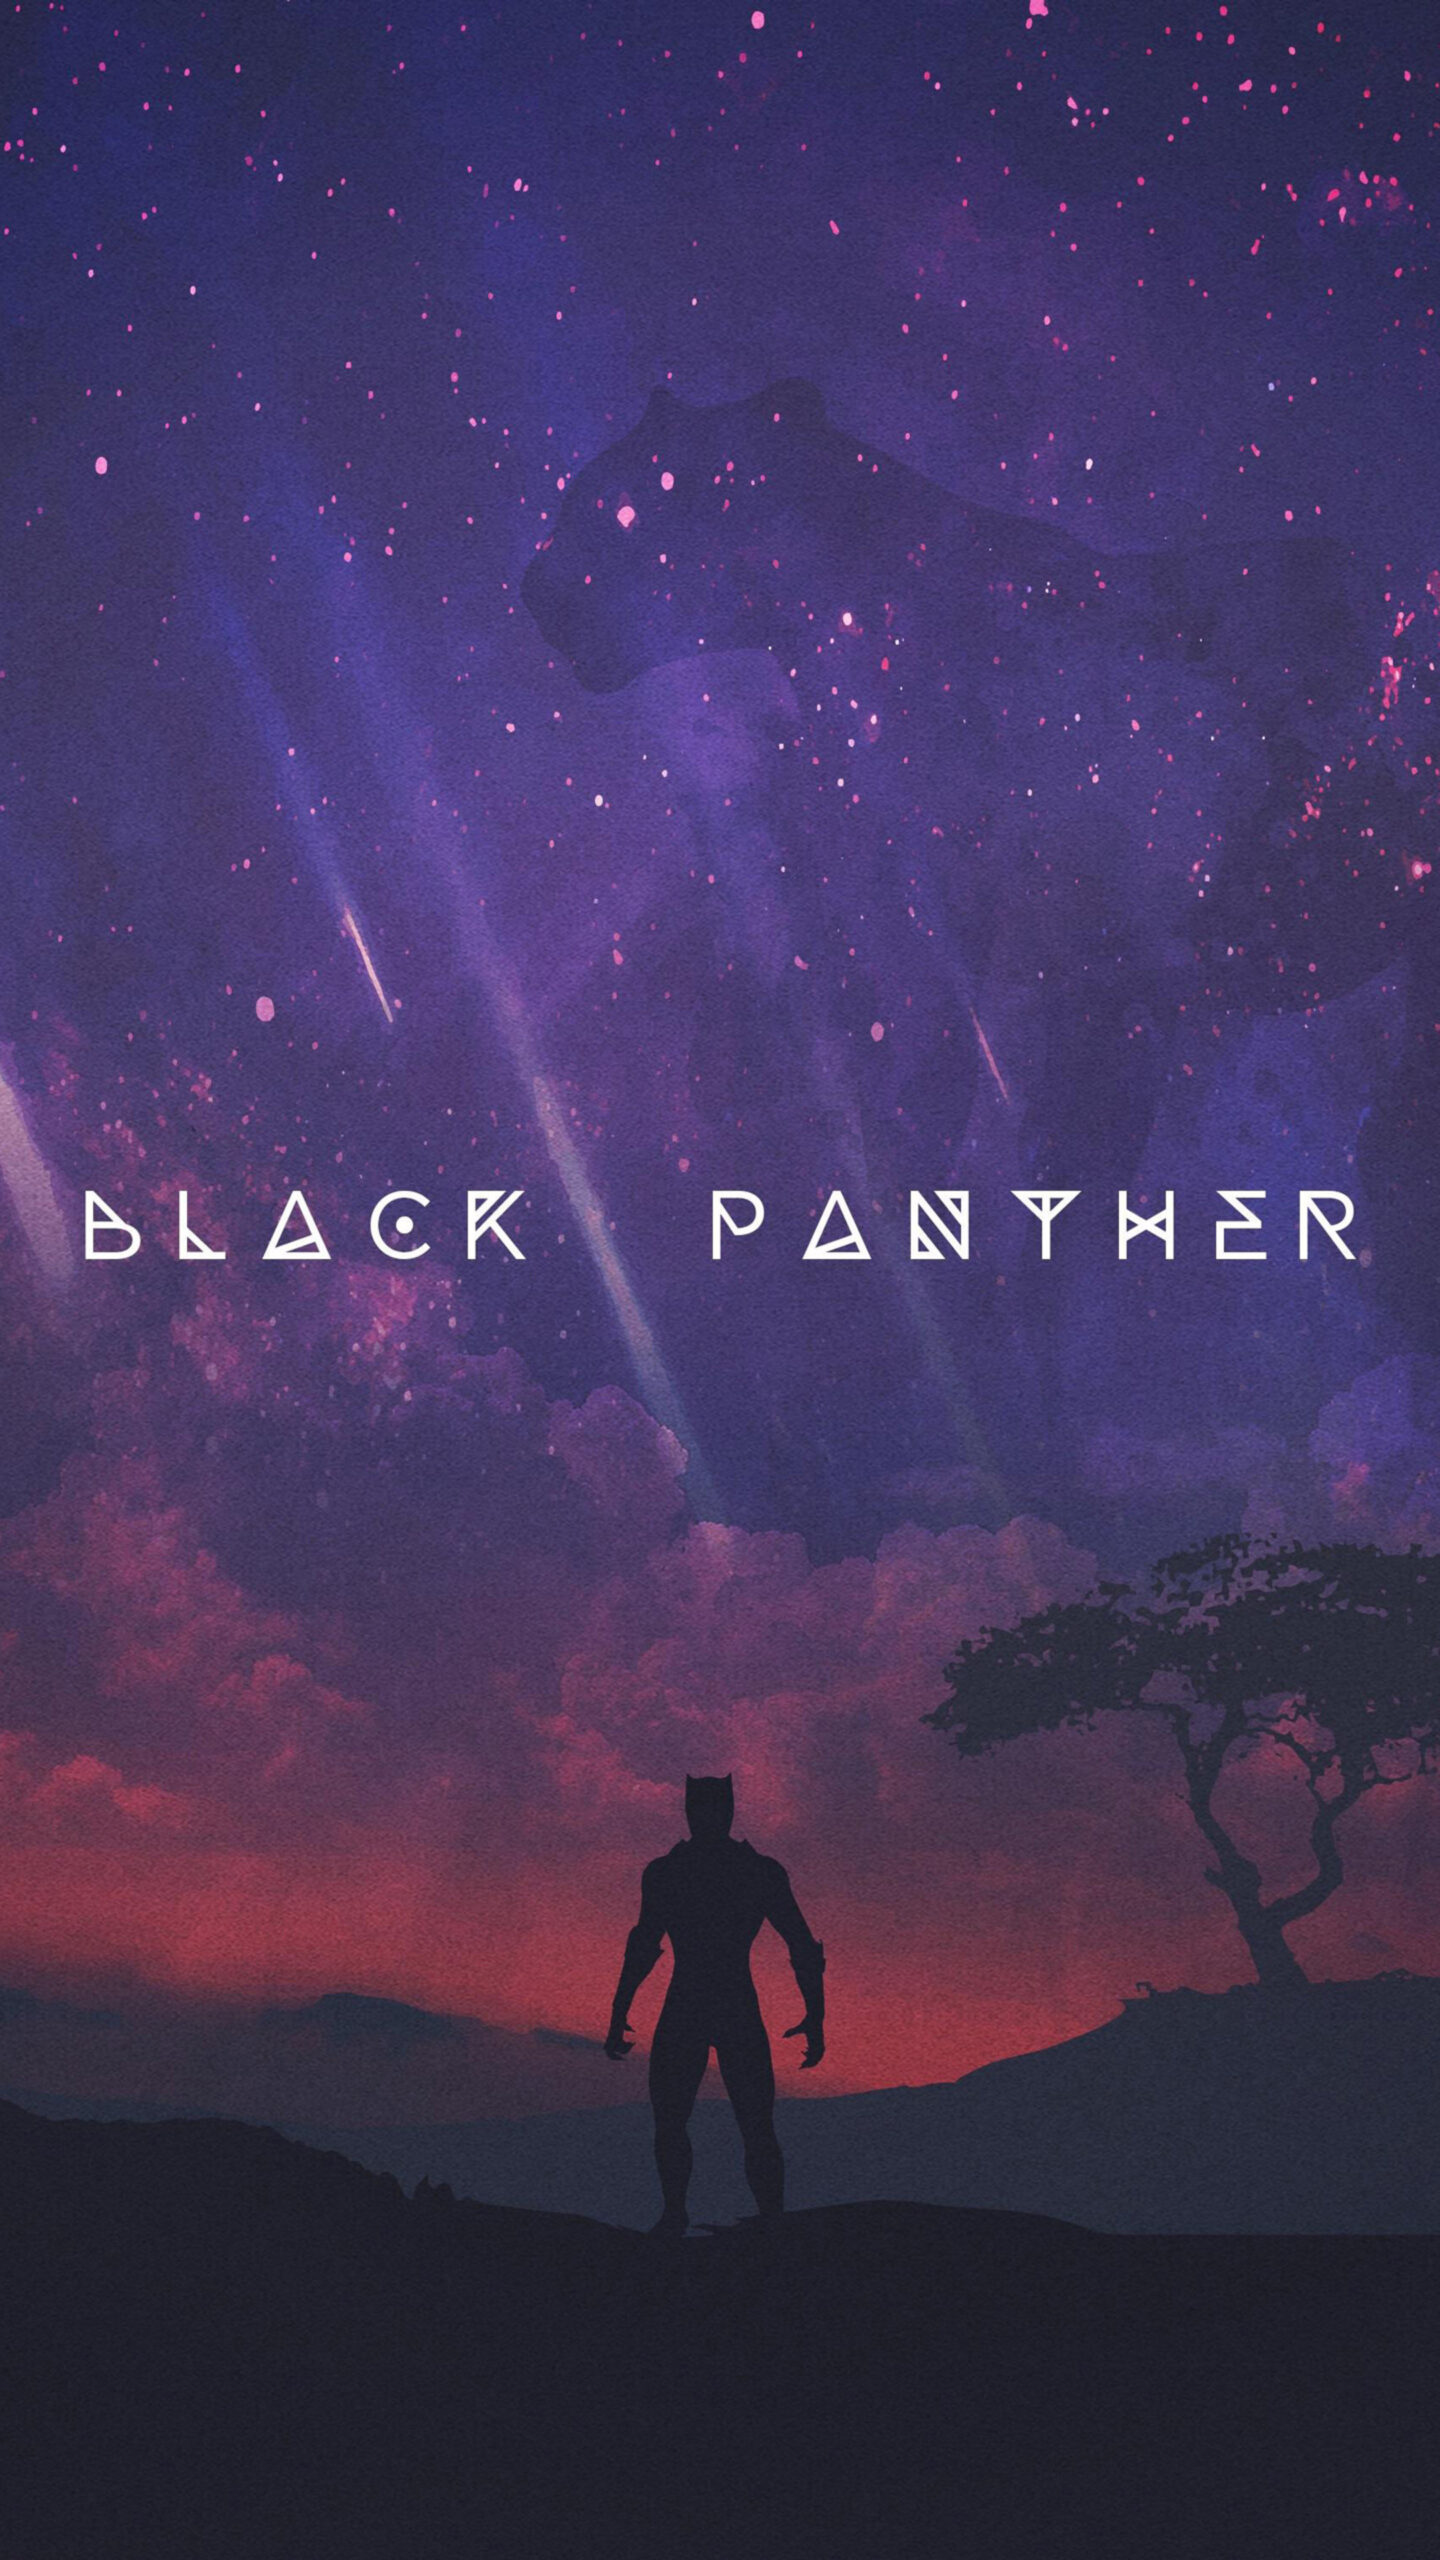 Black Panther Movie Artwork Sony Xperia X,XZ,Z